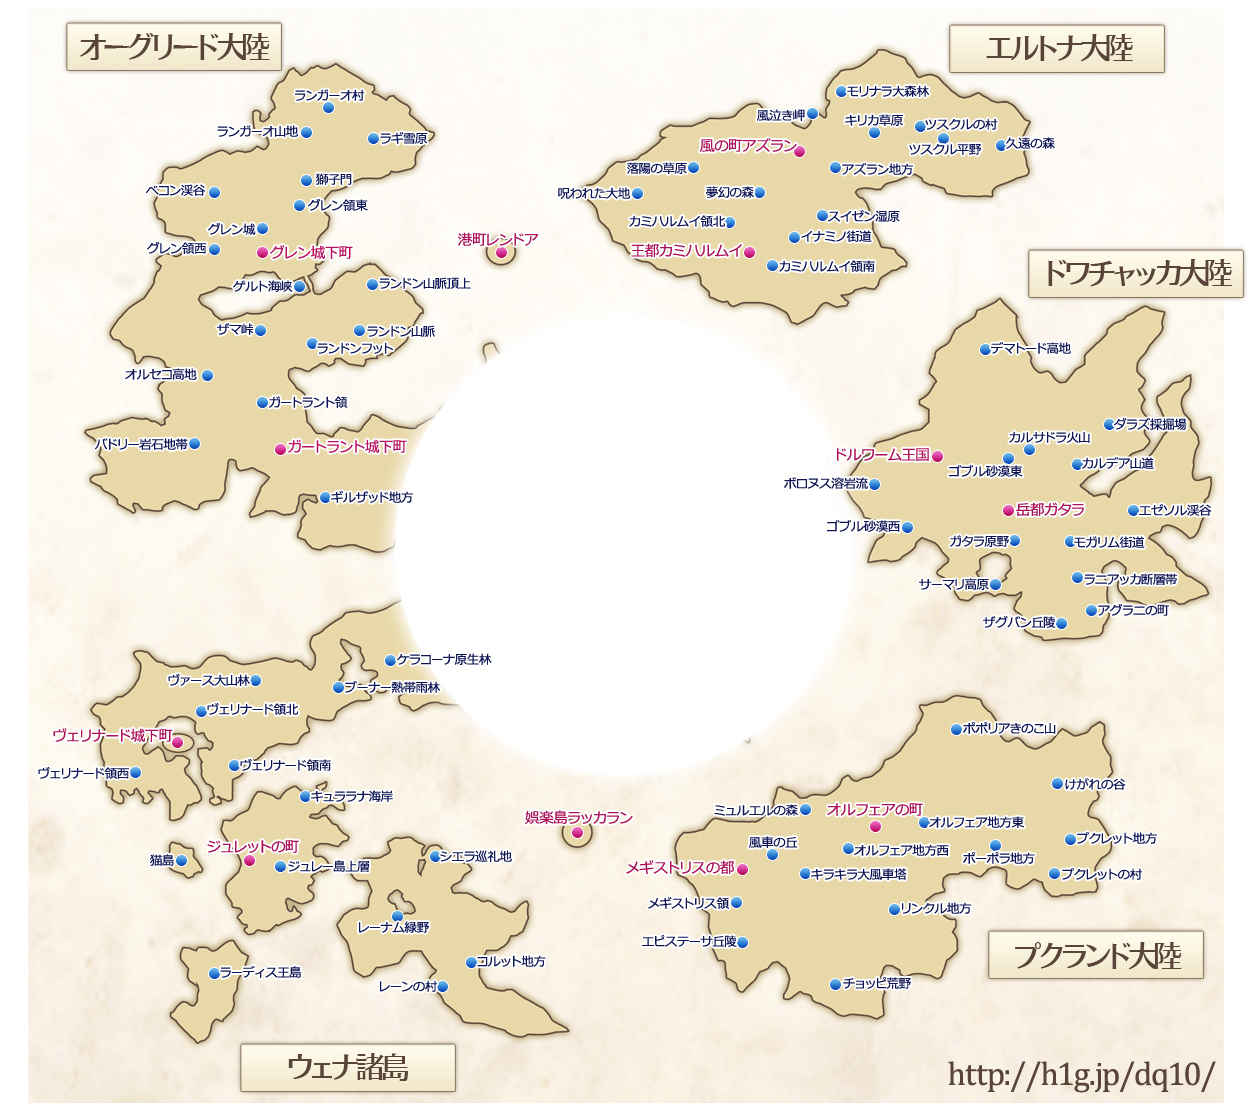 世界地図 ドラクエ10 攻略wiki Dq10 ヘイグ攻略まとめwiki